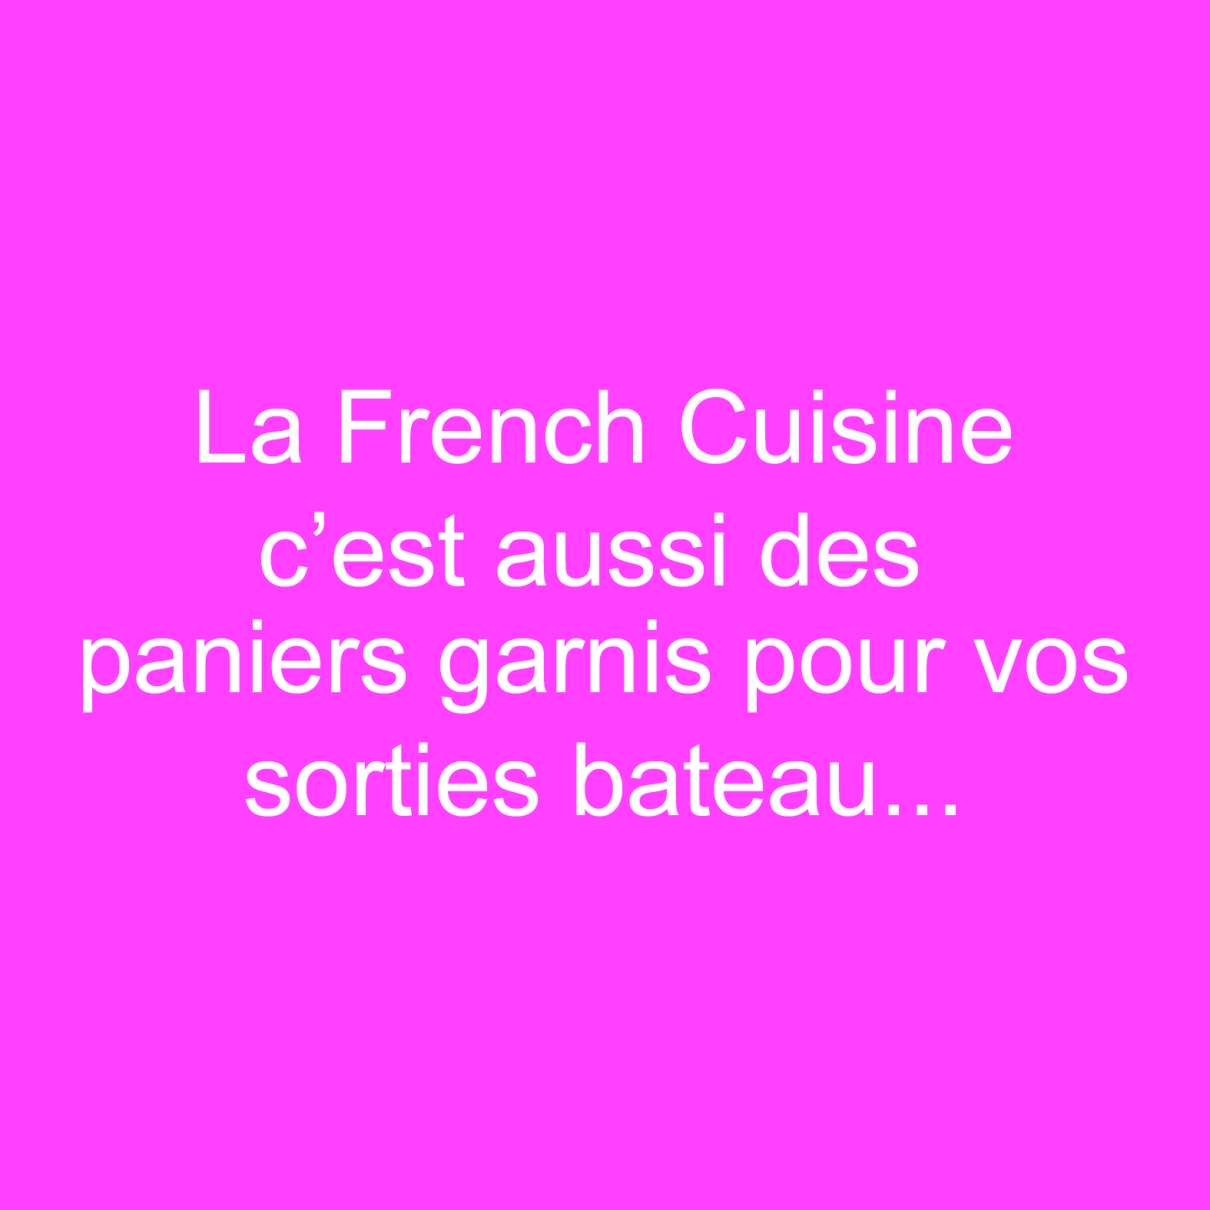 La French Cuisine by Mag c'est également des paniers garnis pour vos pique-niques, randonnées, sorties en bateau